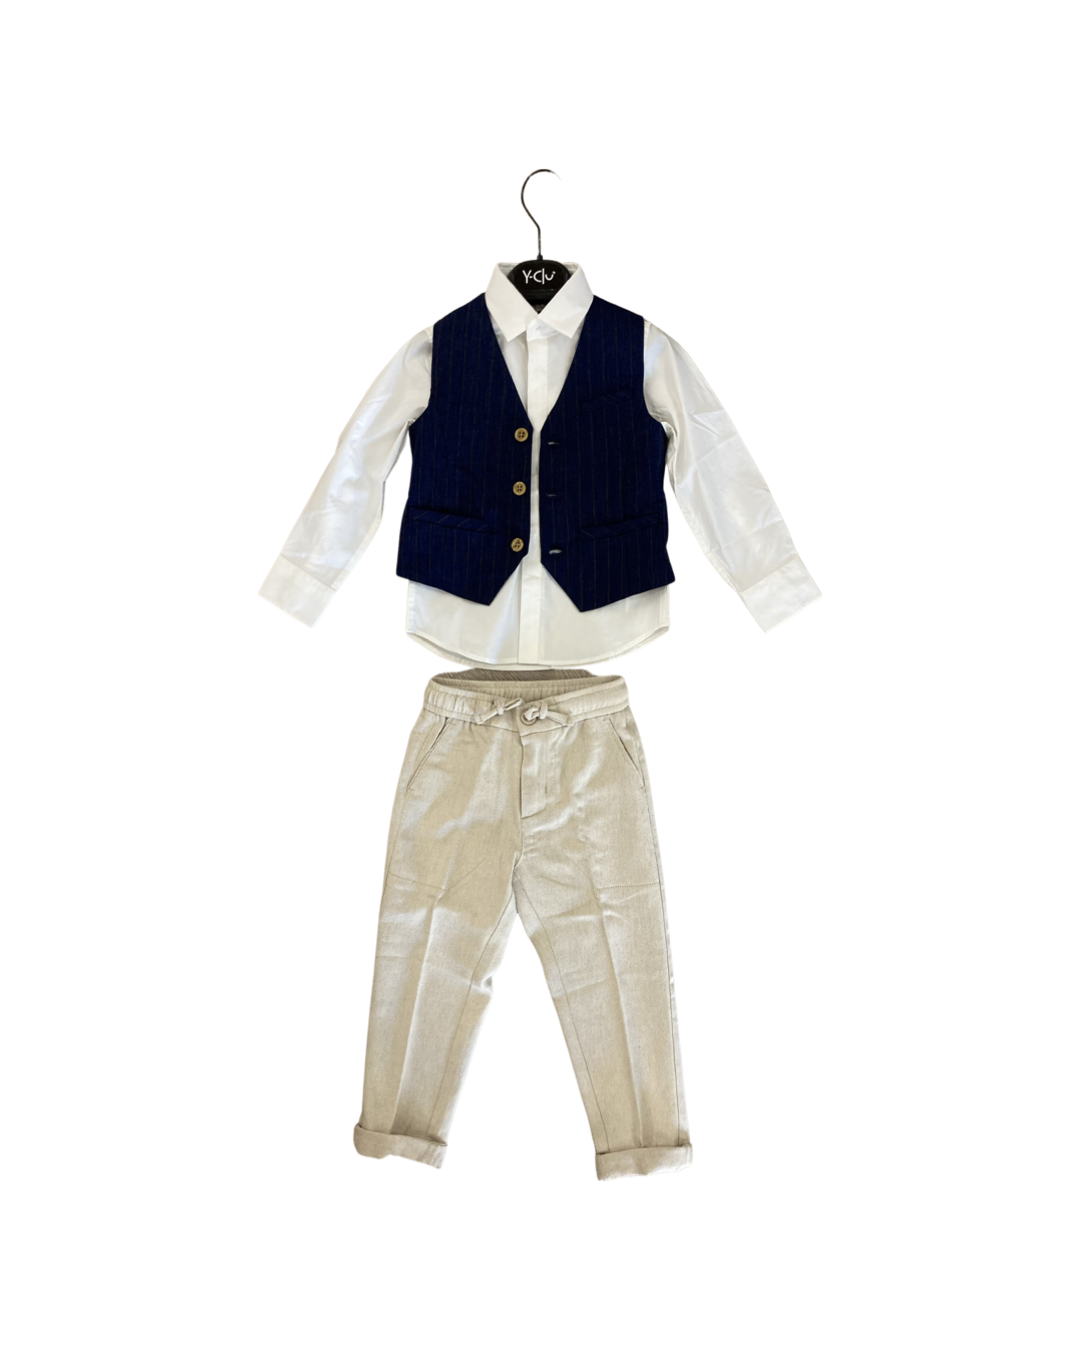 pantalone , Pantalone beige con elastico in vita per Bambino da 3anni a 7anni Y-Clu BYB9367 - BabyBimbo 0-16, abbigliamento bambini